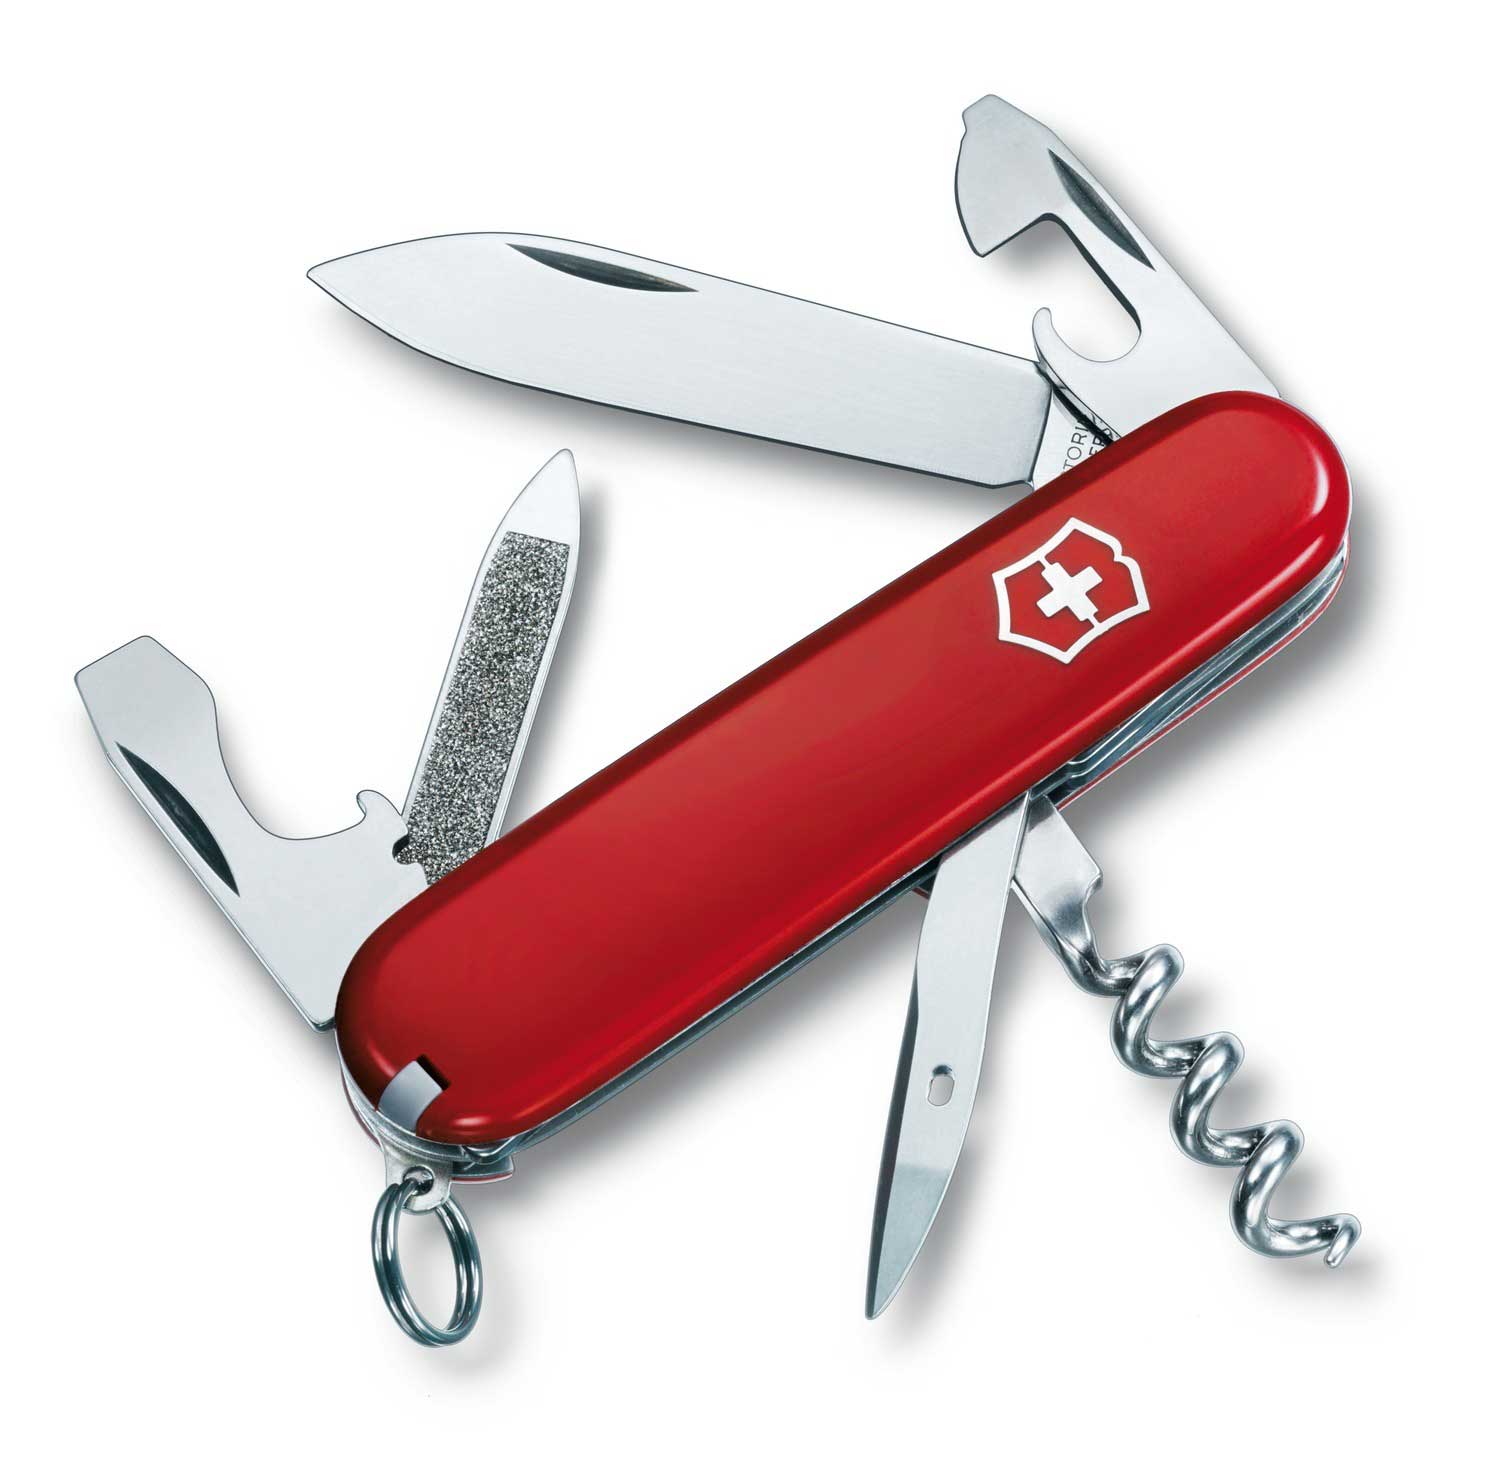 victorinox нож швейцарский многофункциональный складной victorinox outrider 14 функций длина клинка 8 6 см 0 8513 3v Нож Victorinox Sportsman, 84 мм, 13 функций, красный